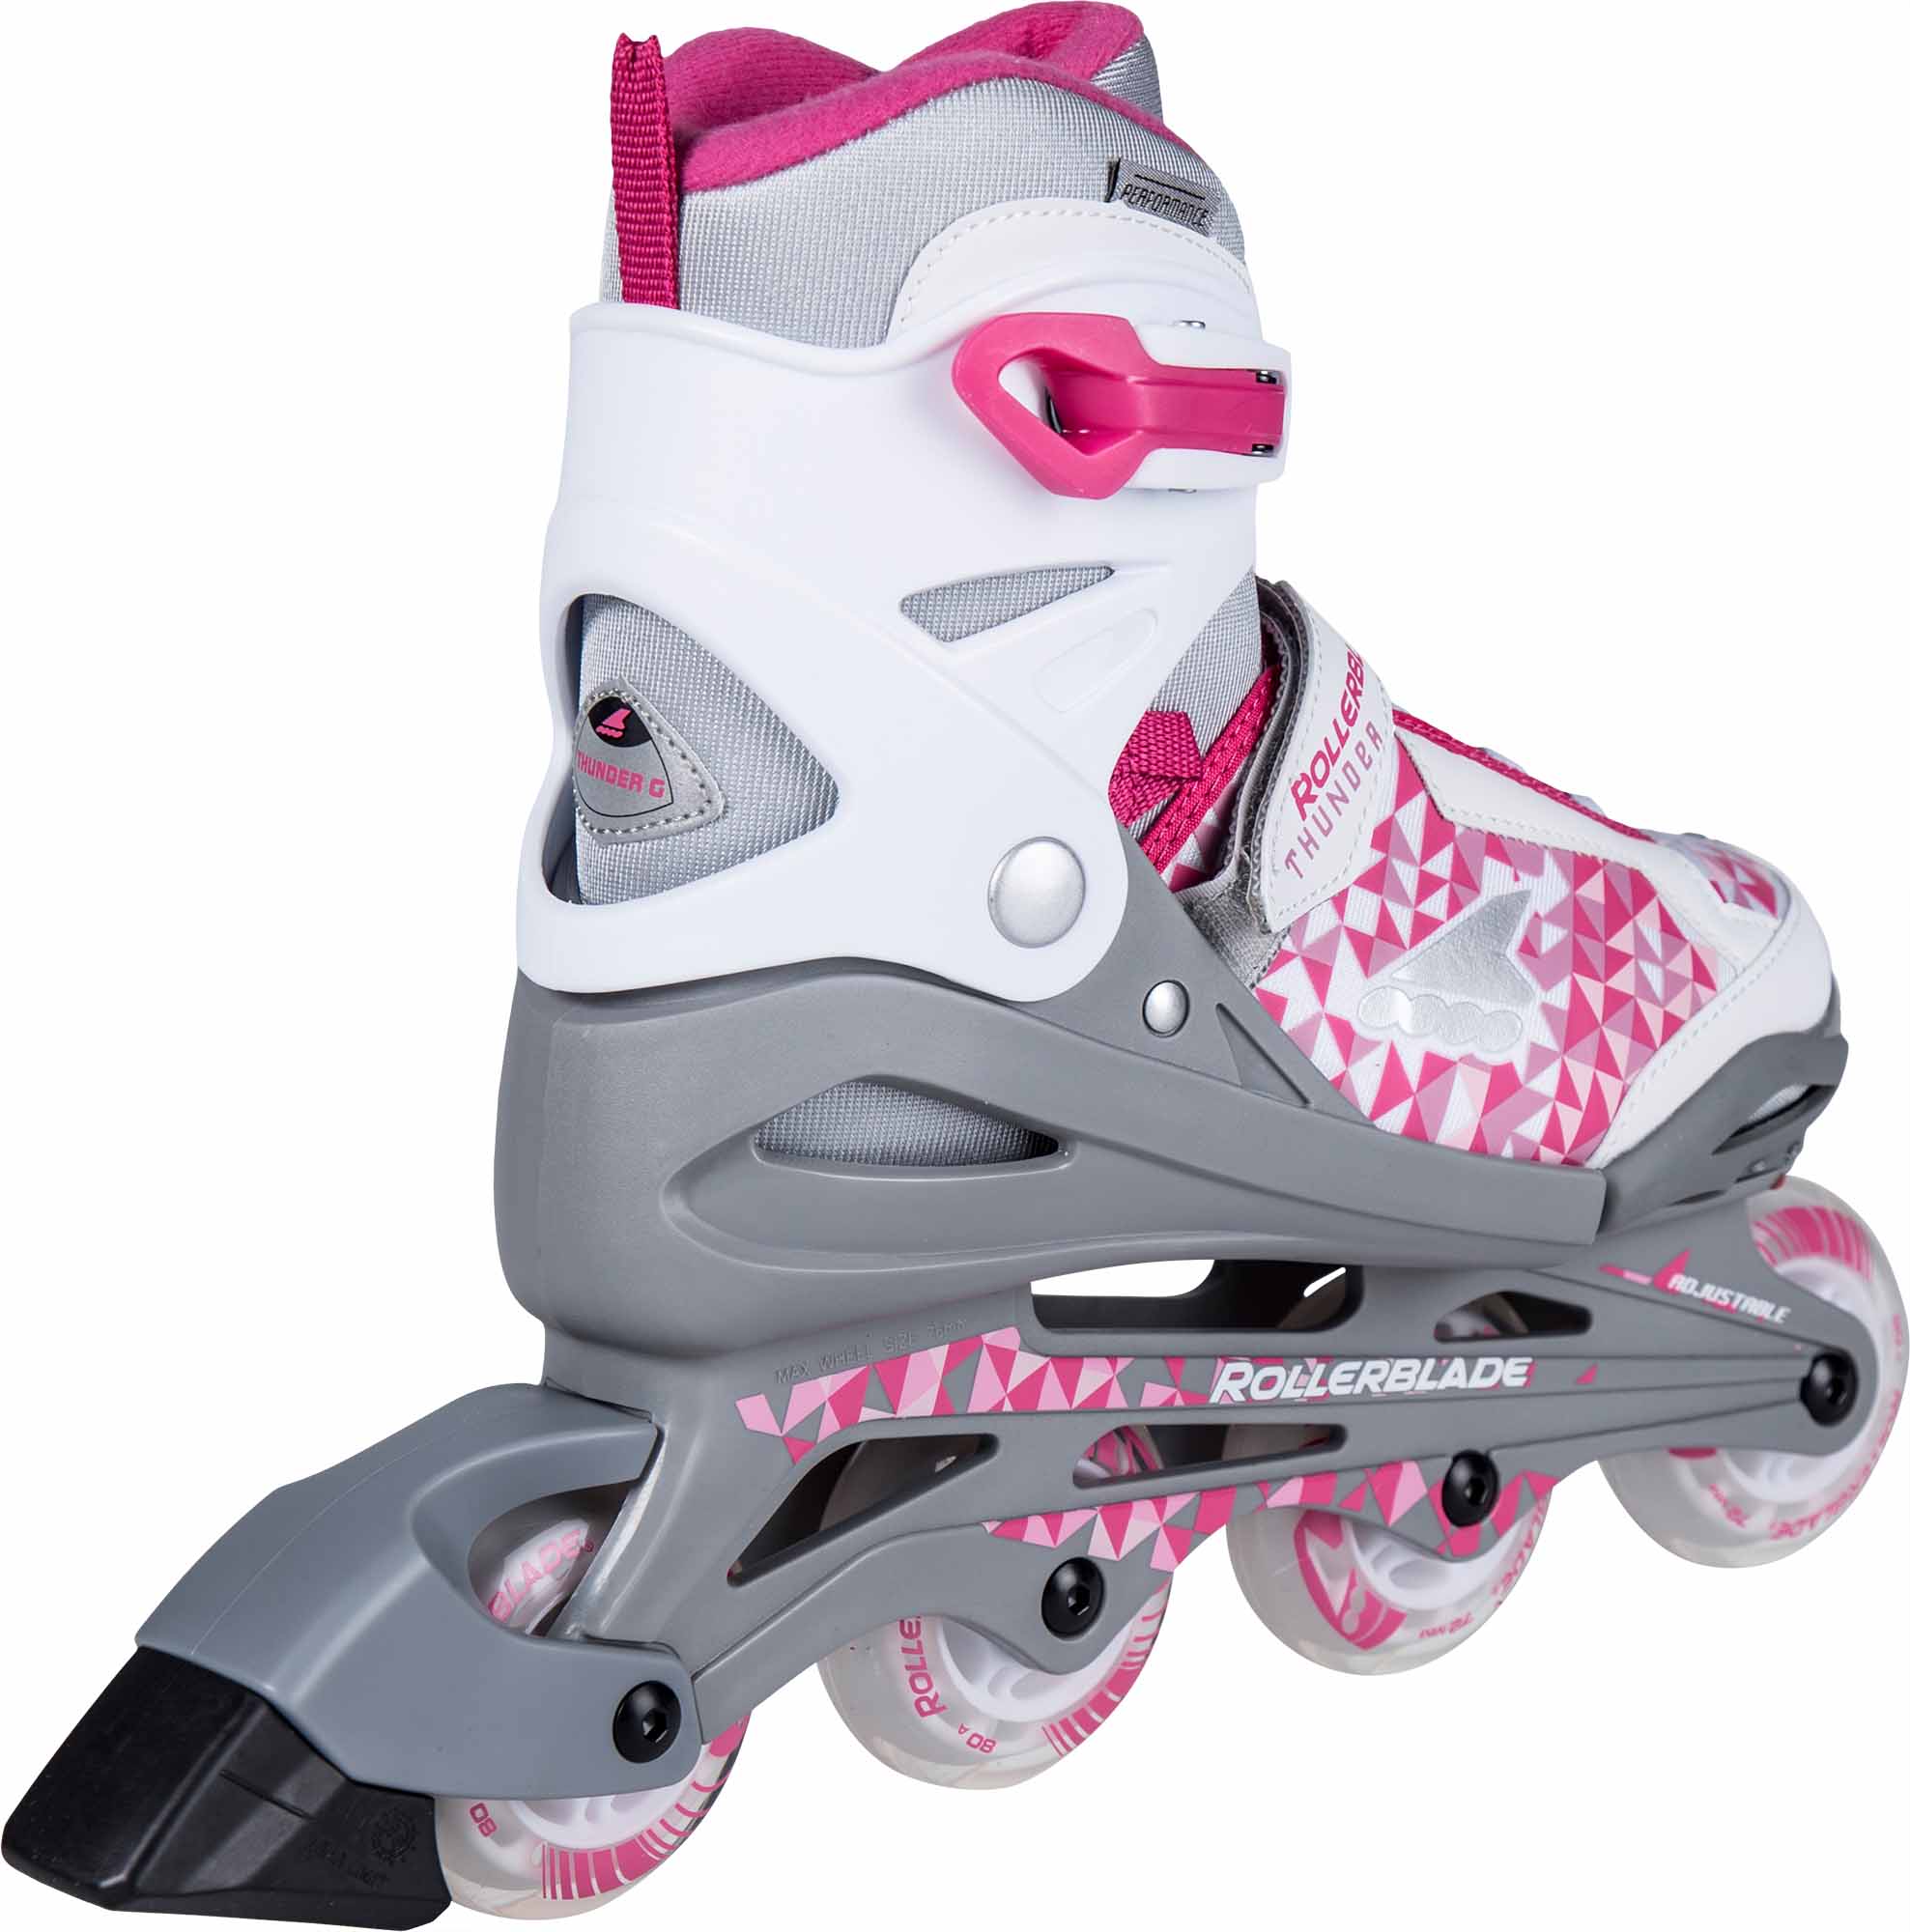 Rollerblade Thunder kinder inline skates 72 mm silver / pink